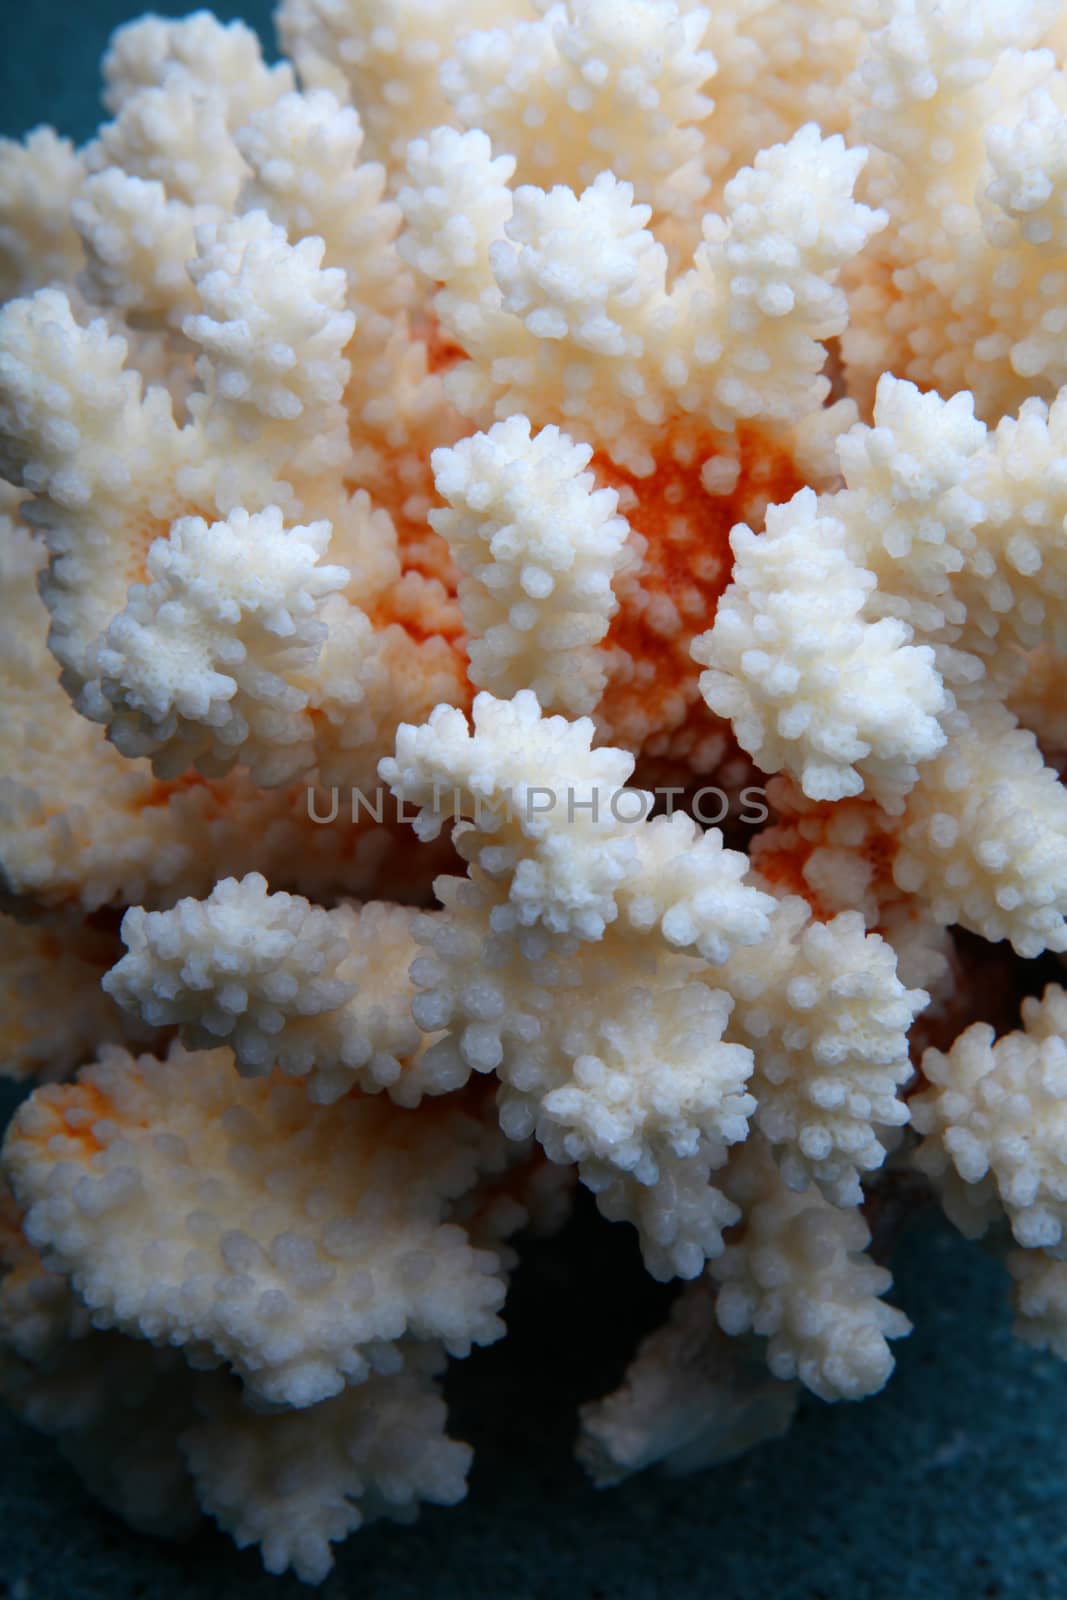 White sea coral texture